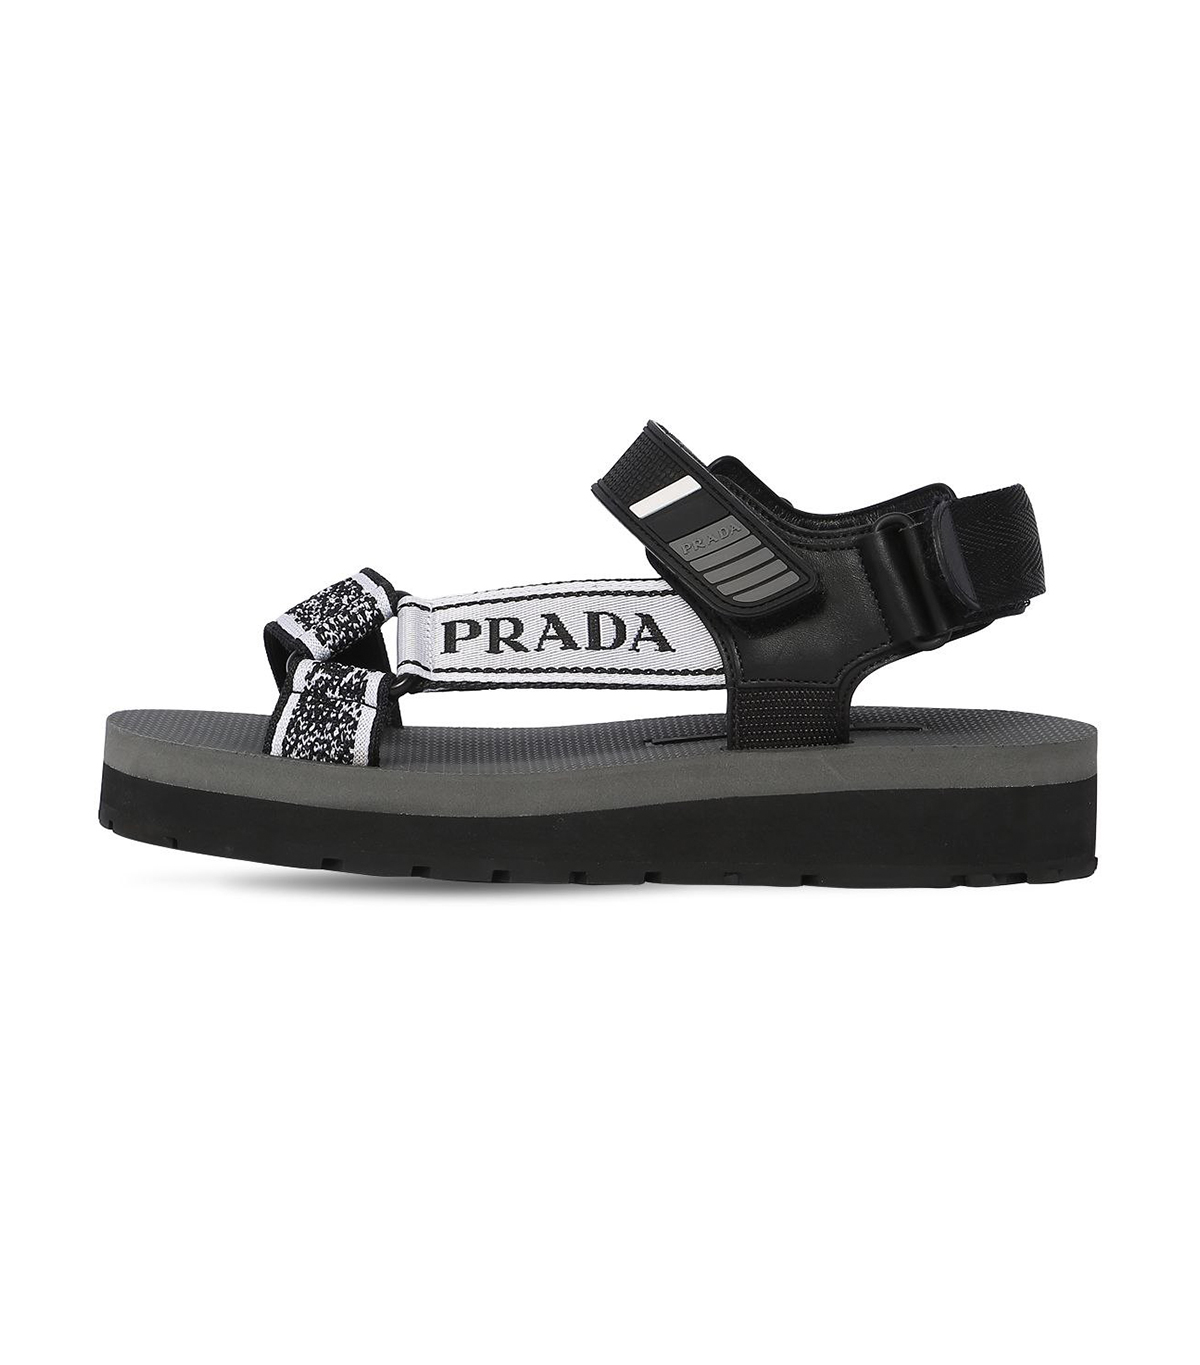 prada sandals 2019